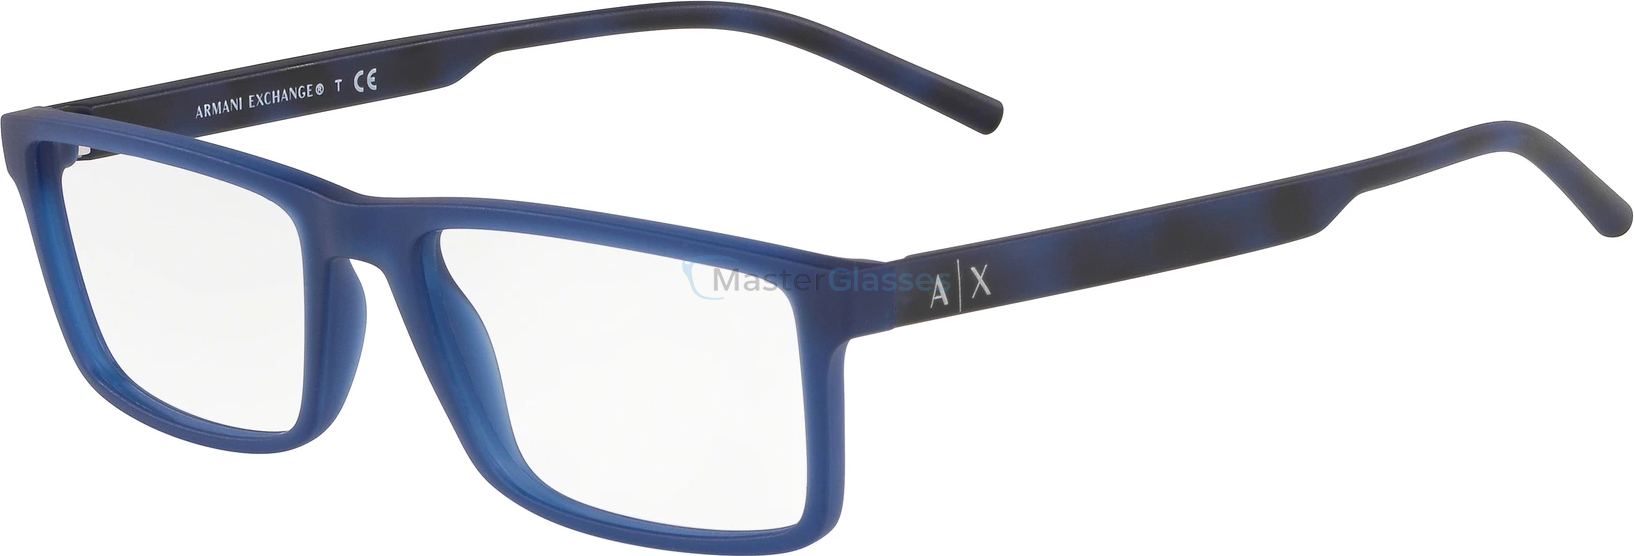  Armani exchange AX3060 8295 Matte Transparent Blue